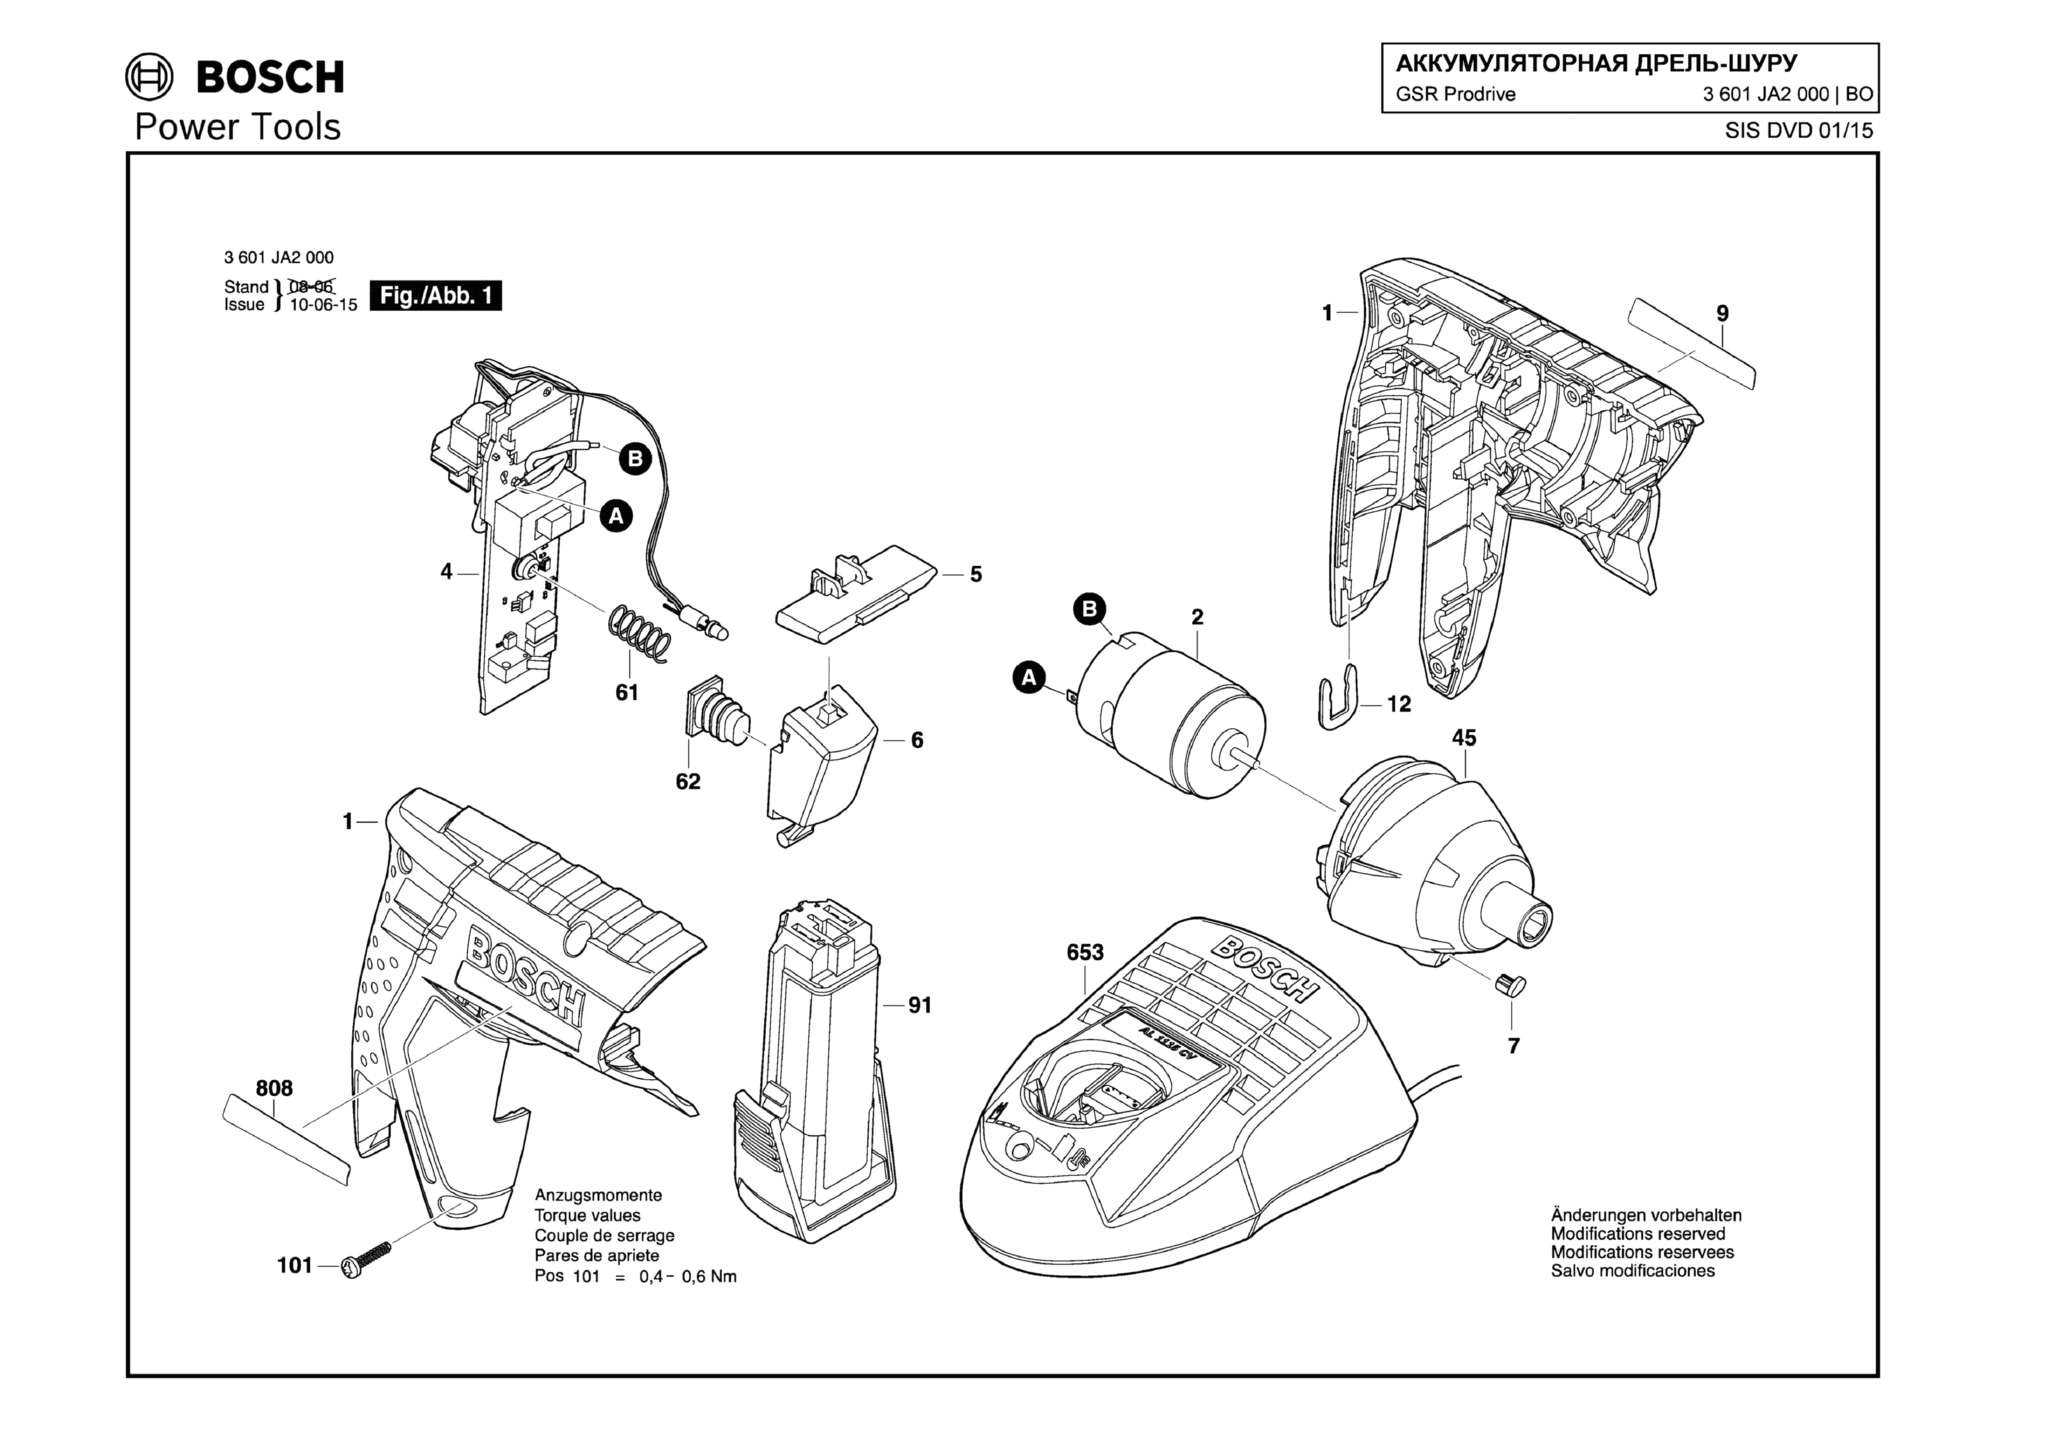 Запчасти, схема и деталировка Bosch GSR PRODRIVE (ТИП 3601JA2000)